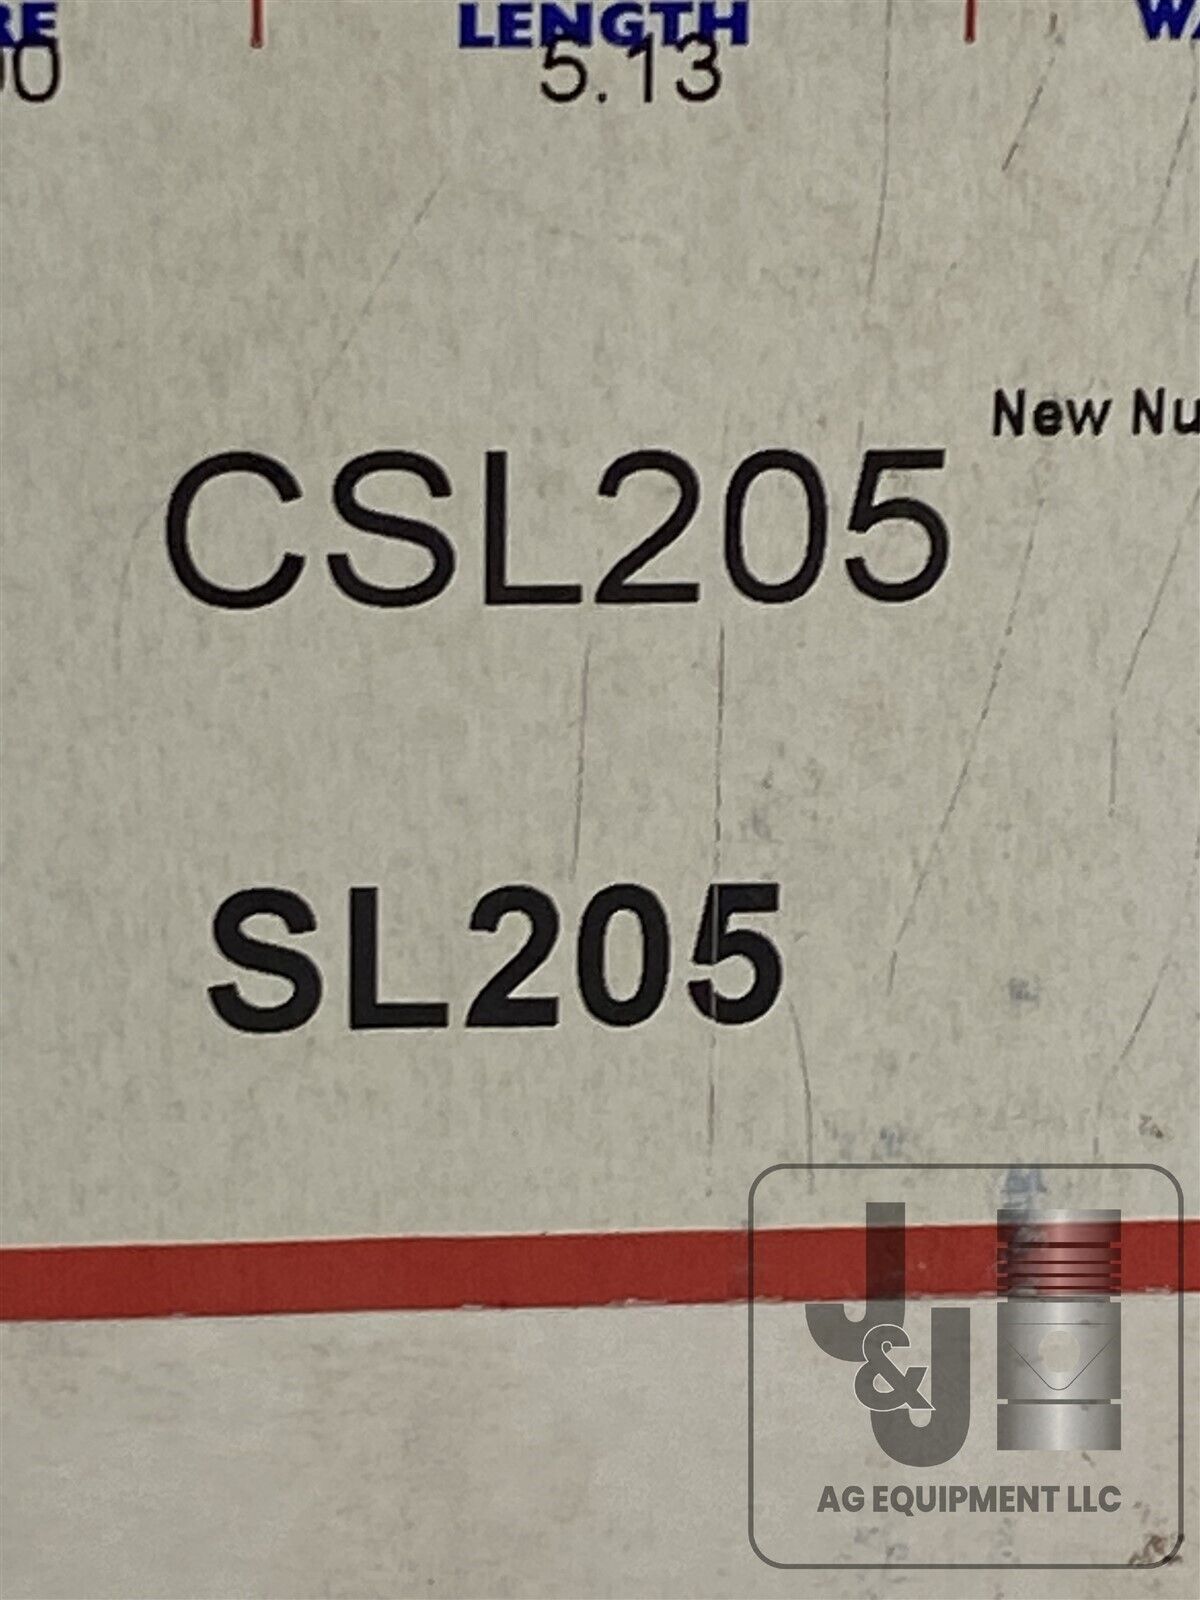 OHIO CSL205 / SL205 CYLINDER SLEEVE BORE 3.500 LENGTH 5.13 WALL 1/8